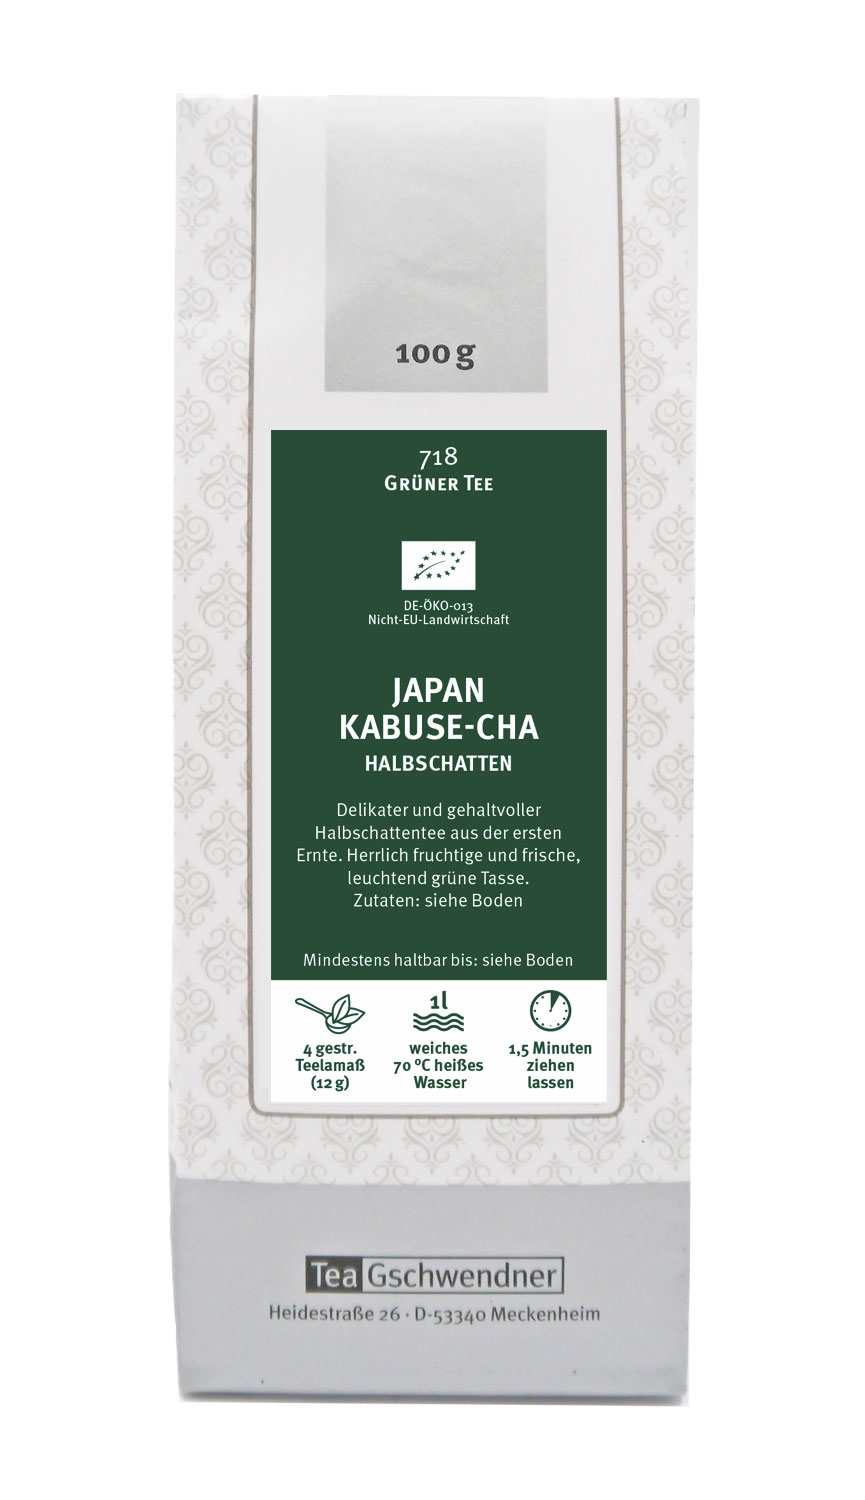 Japan Kabuse-cha (covered tea)